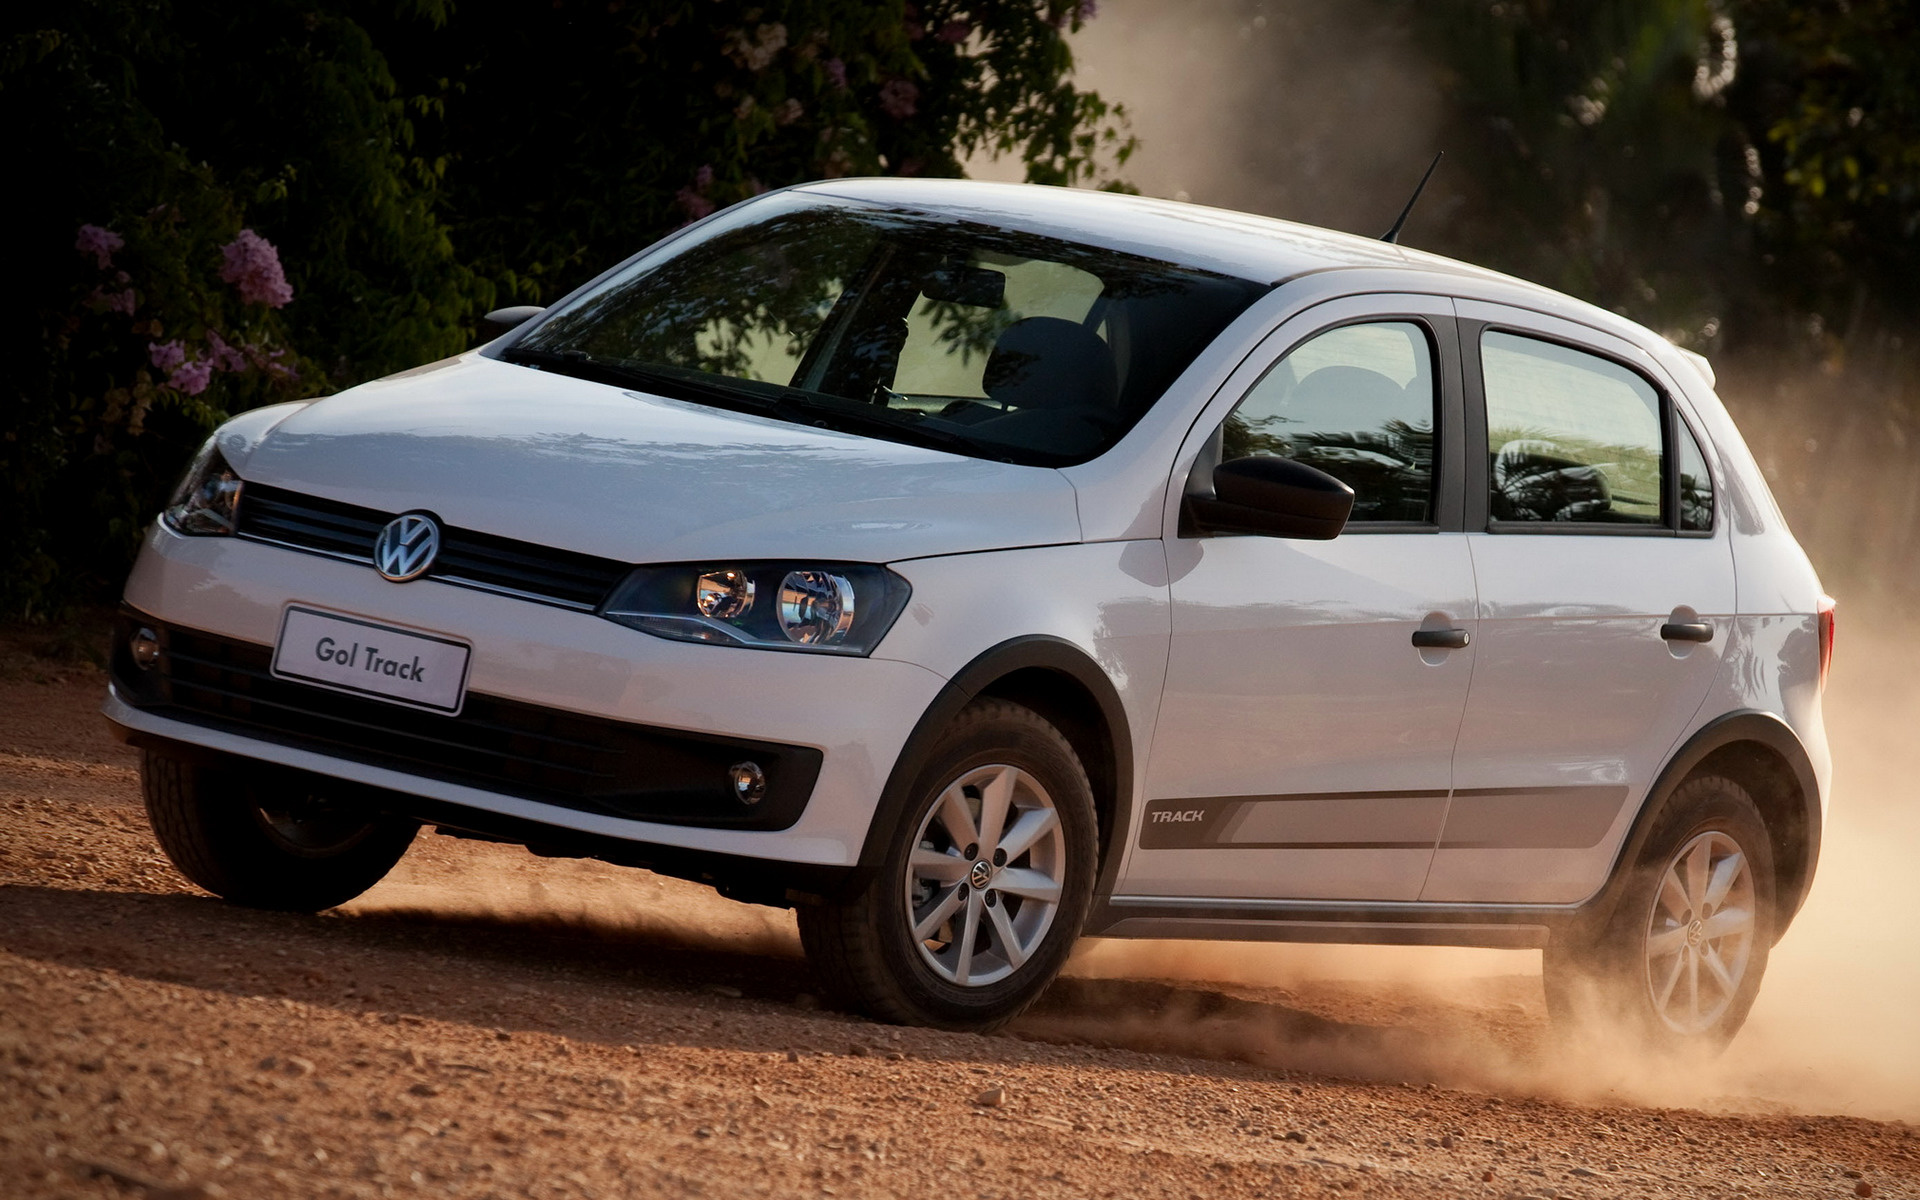 2013 Volkswagen Gol Track 5-door - Wallpapers and HD Images | Car Pixel